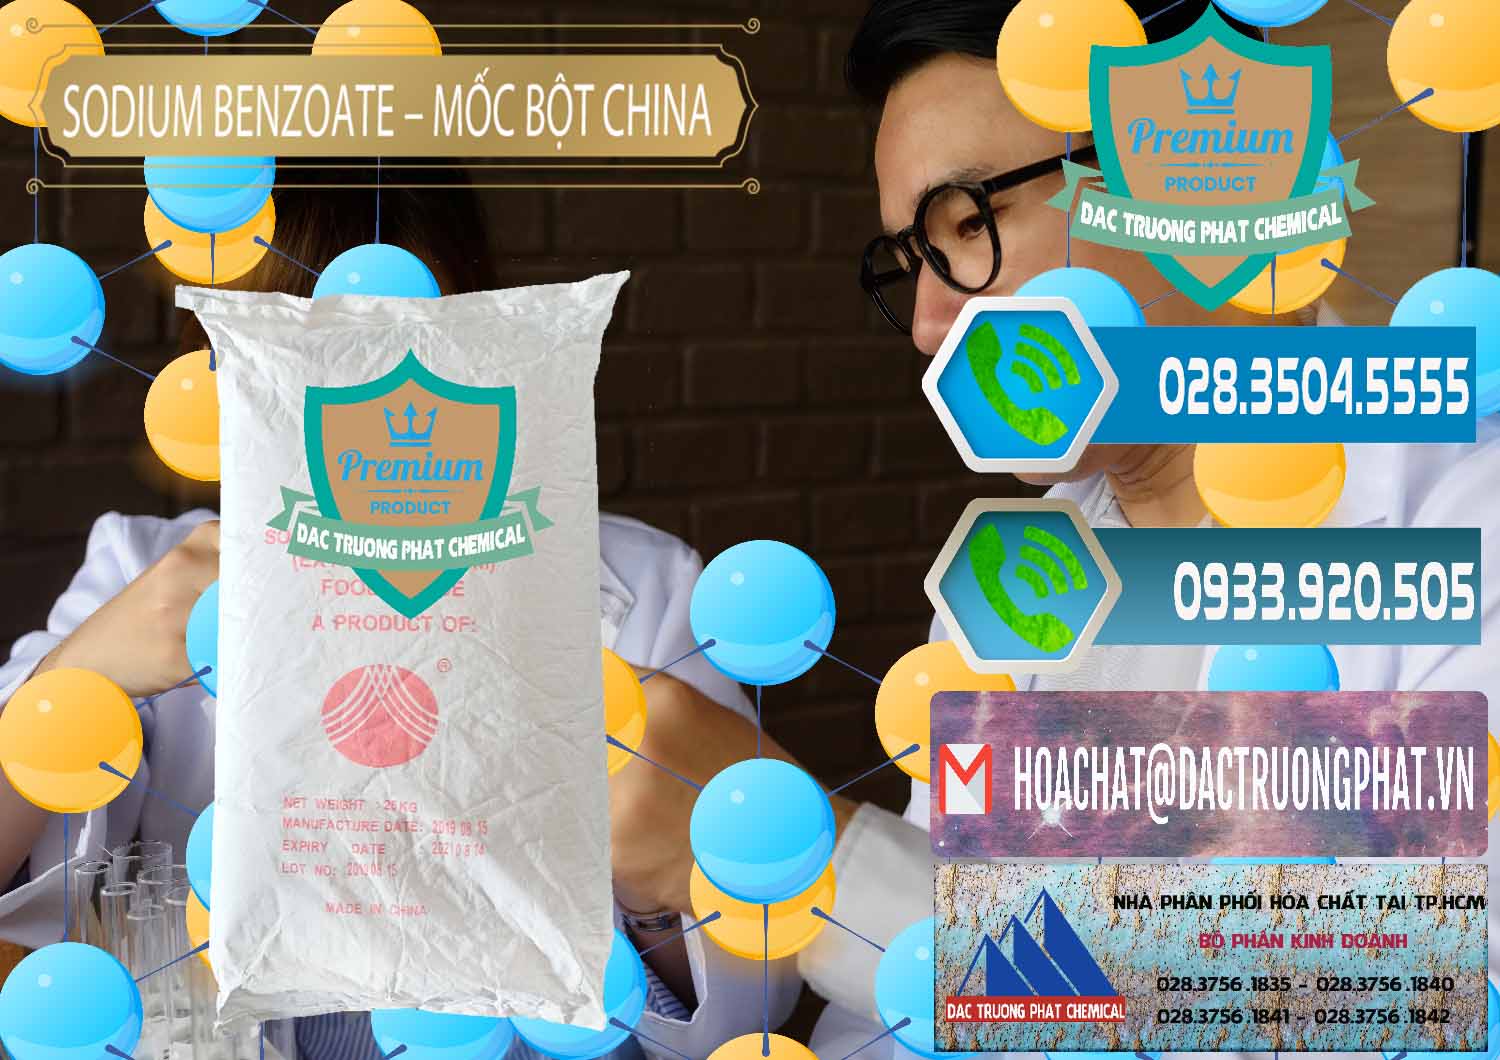 Cty cung cấp - bán Sodium Benzoate - Mốc Bột Chữ Cam Food Grade Trung Quốc China - 0135 - Chuyên cung cấp và kinh doanh hóa chất tại TP.HCM - congtyhoachat.net